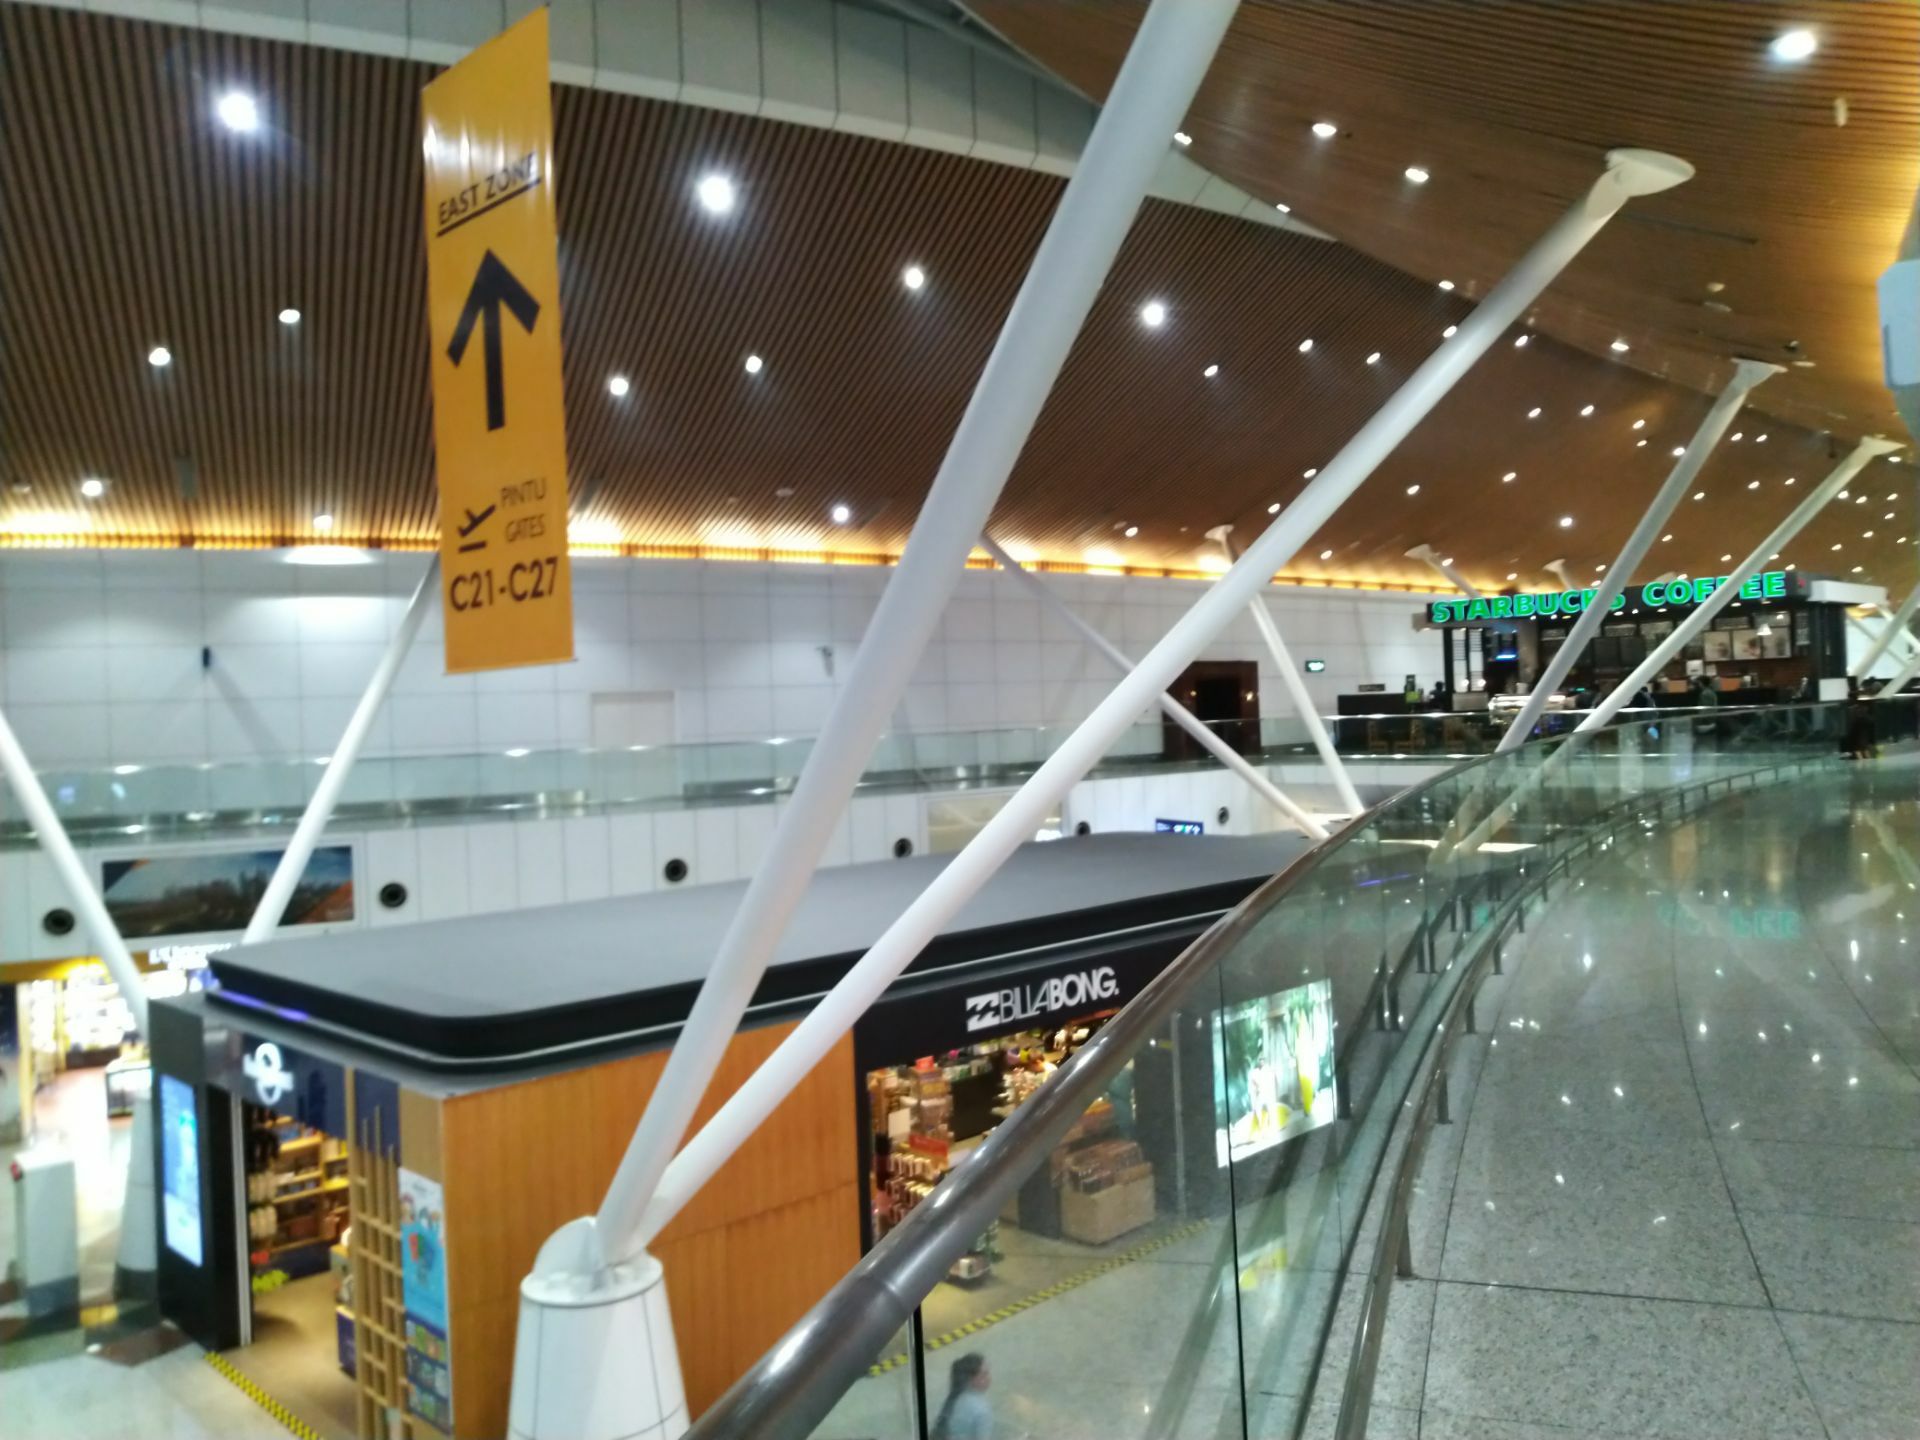 【机场贵宾室】 吉隆坡国际机场贵宾室 Plaza Premium Lounge (PPL) at International ...